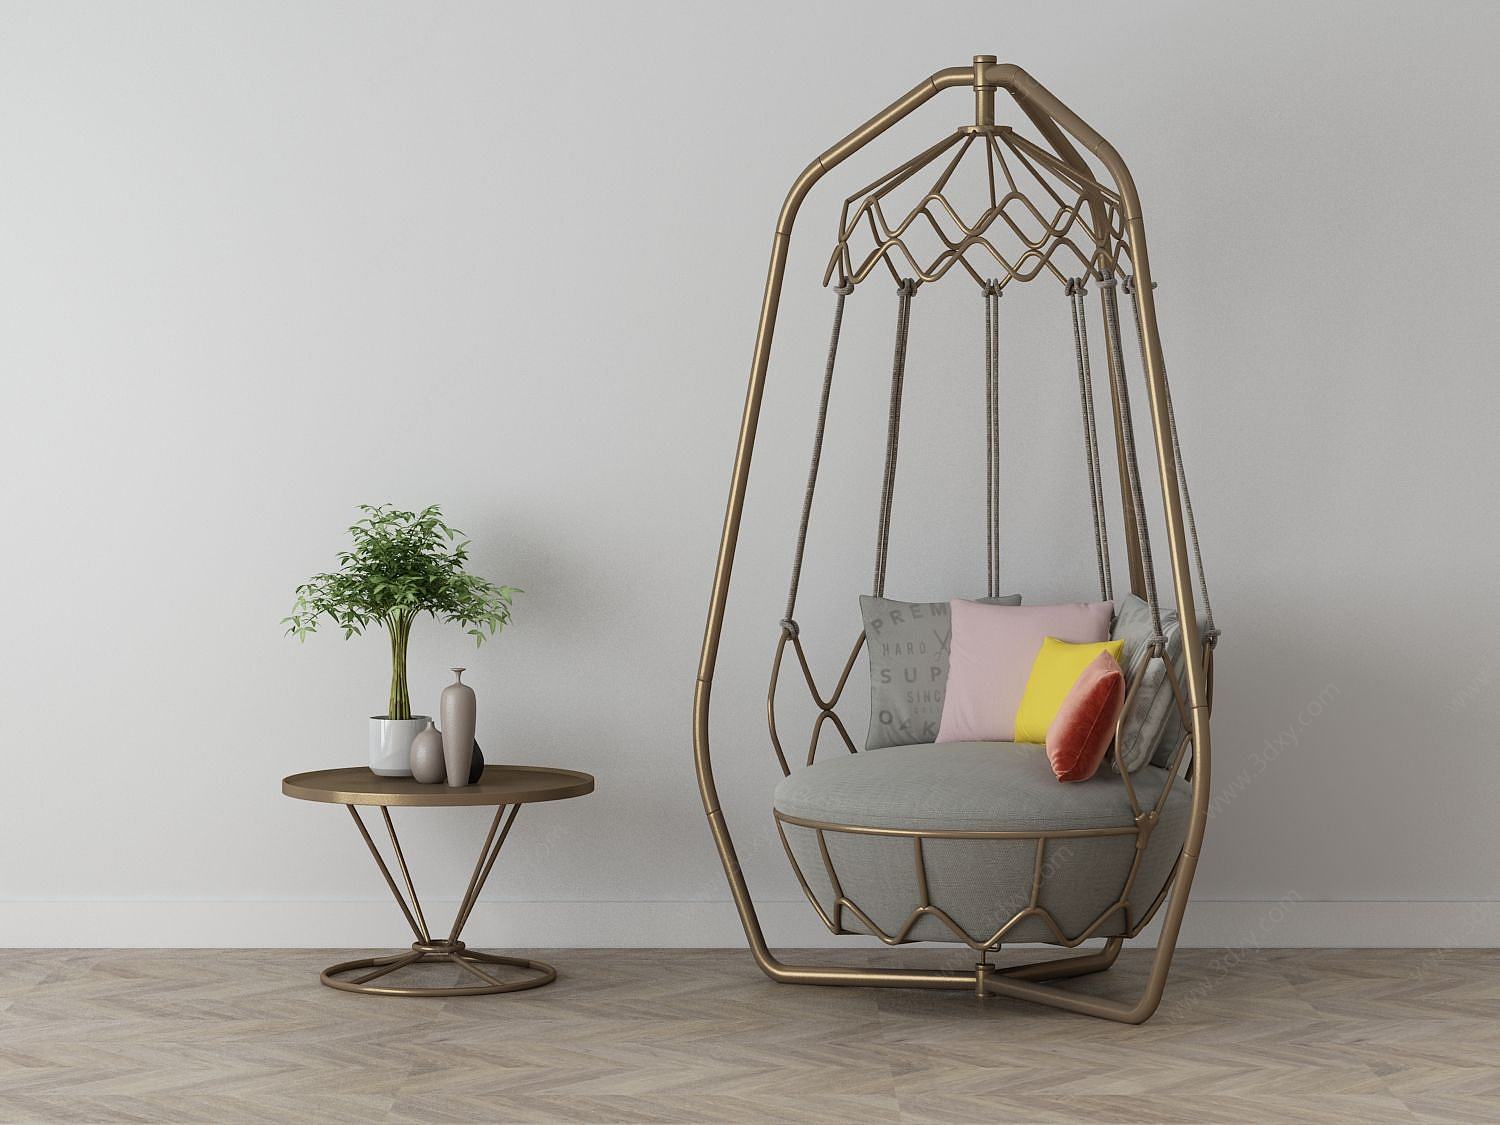 家具饰品组合休闲沙发3D模型